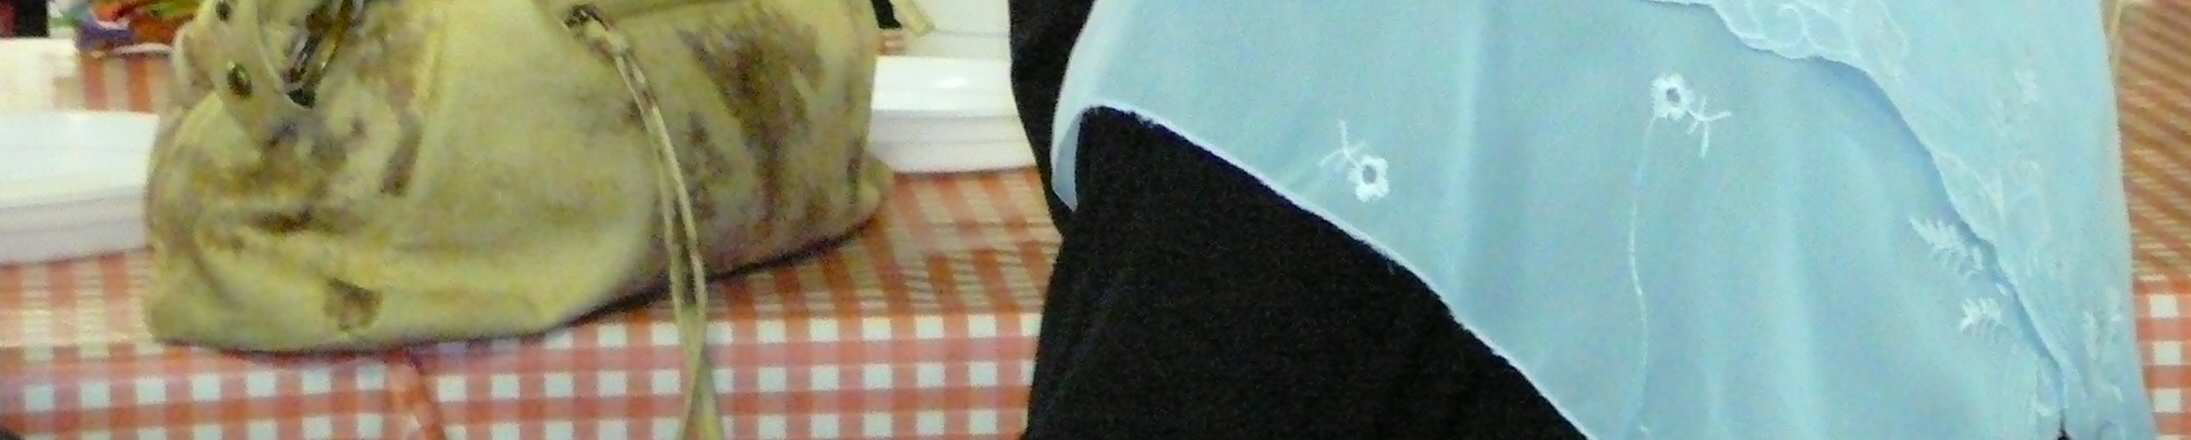 Foto č. 9: Oslava svátku obětování (íd al-adhá); jídelna vysokoškolské menzy Vinařská, nacházející se v areálu vysokoškolských kolejí Vinařská v Brně, leden 2006.